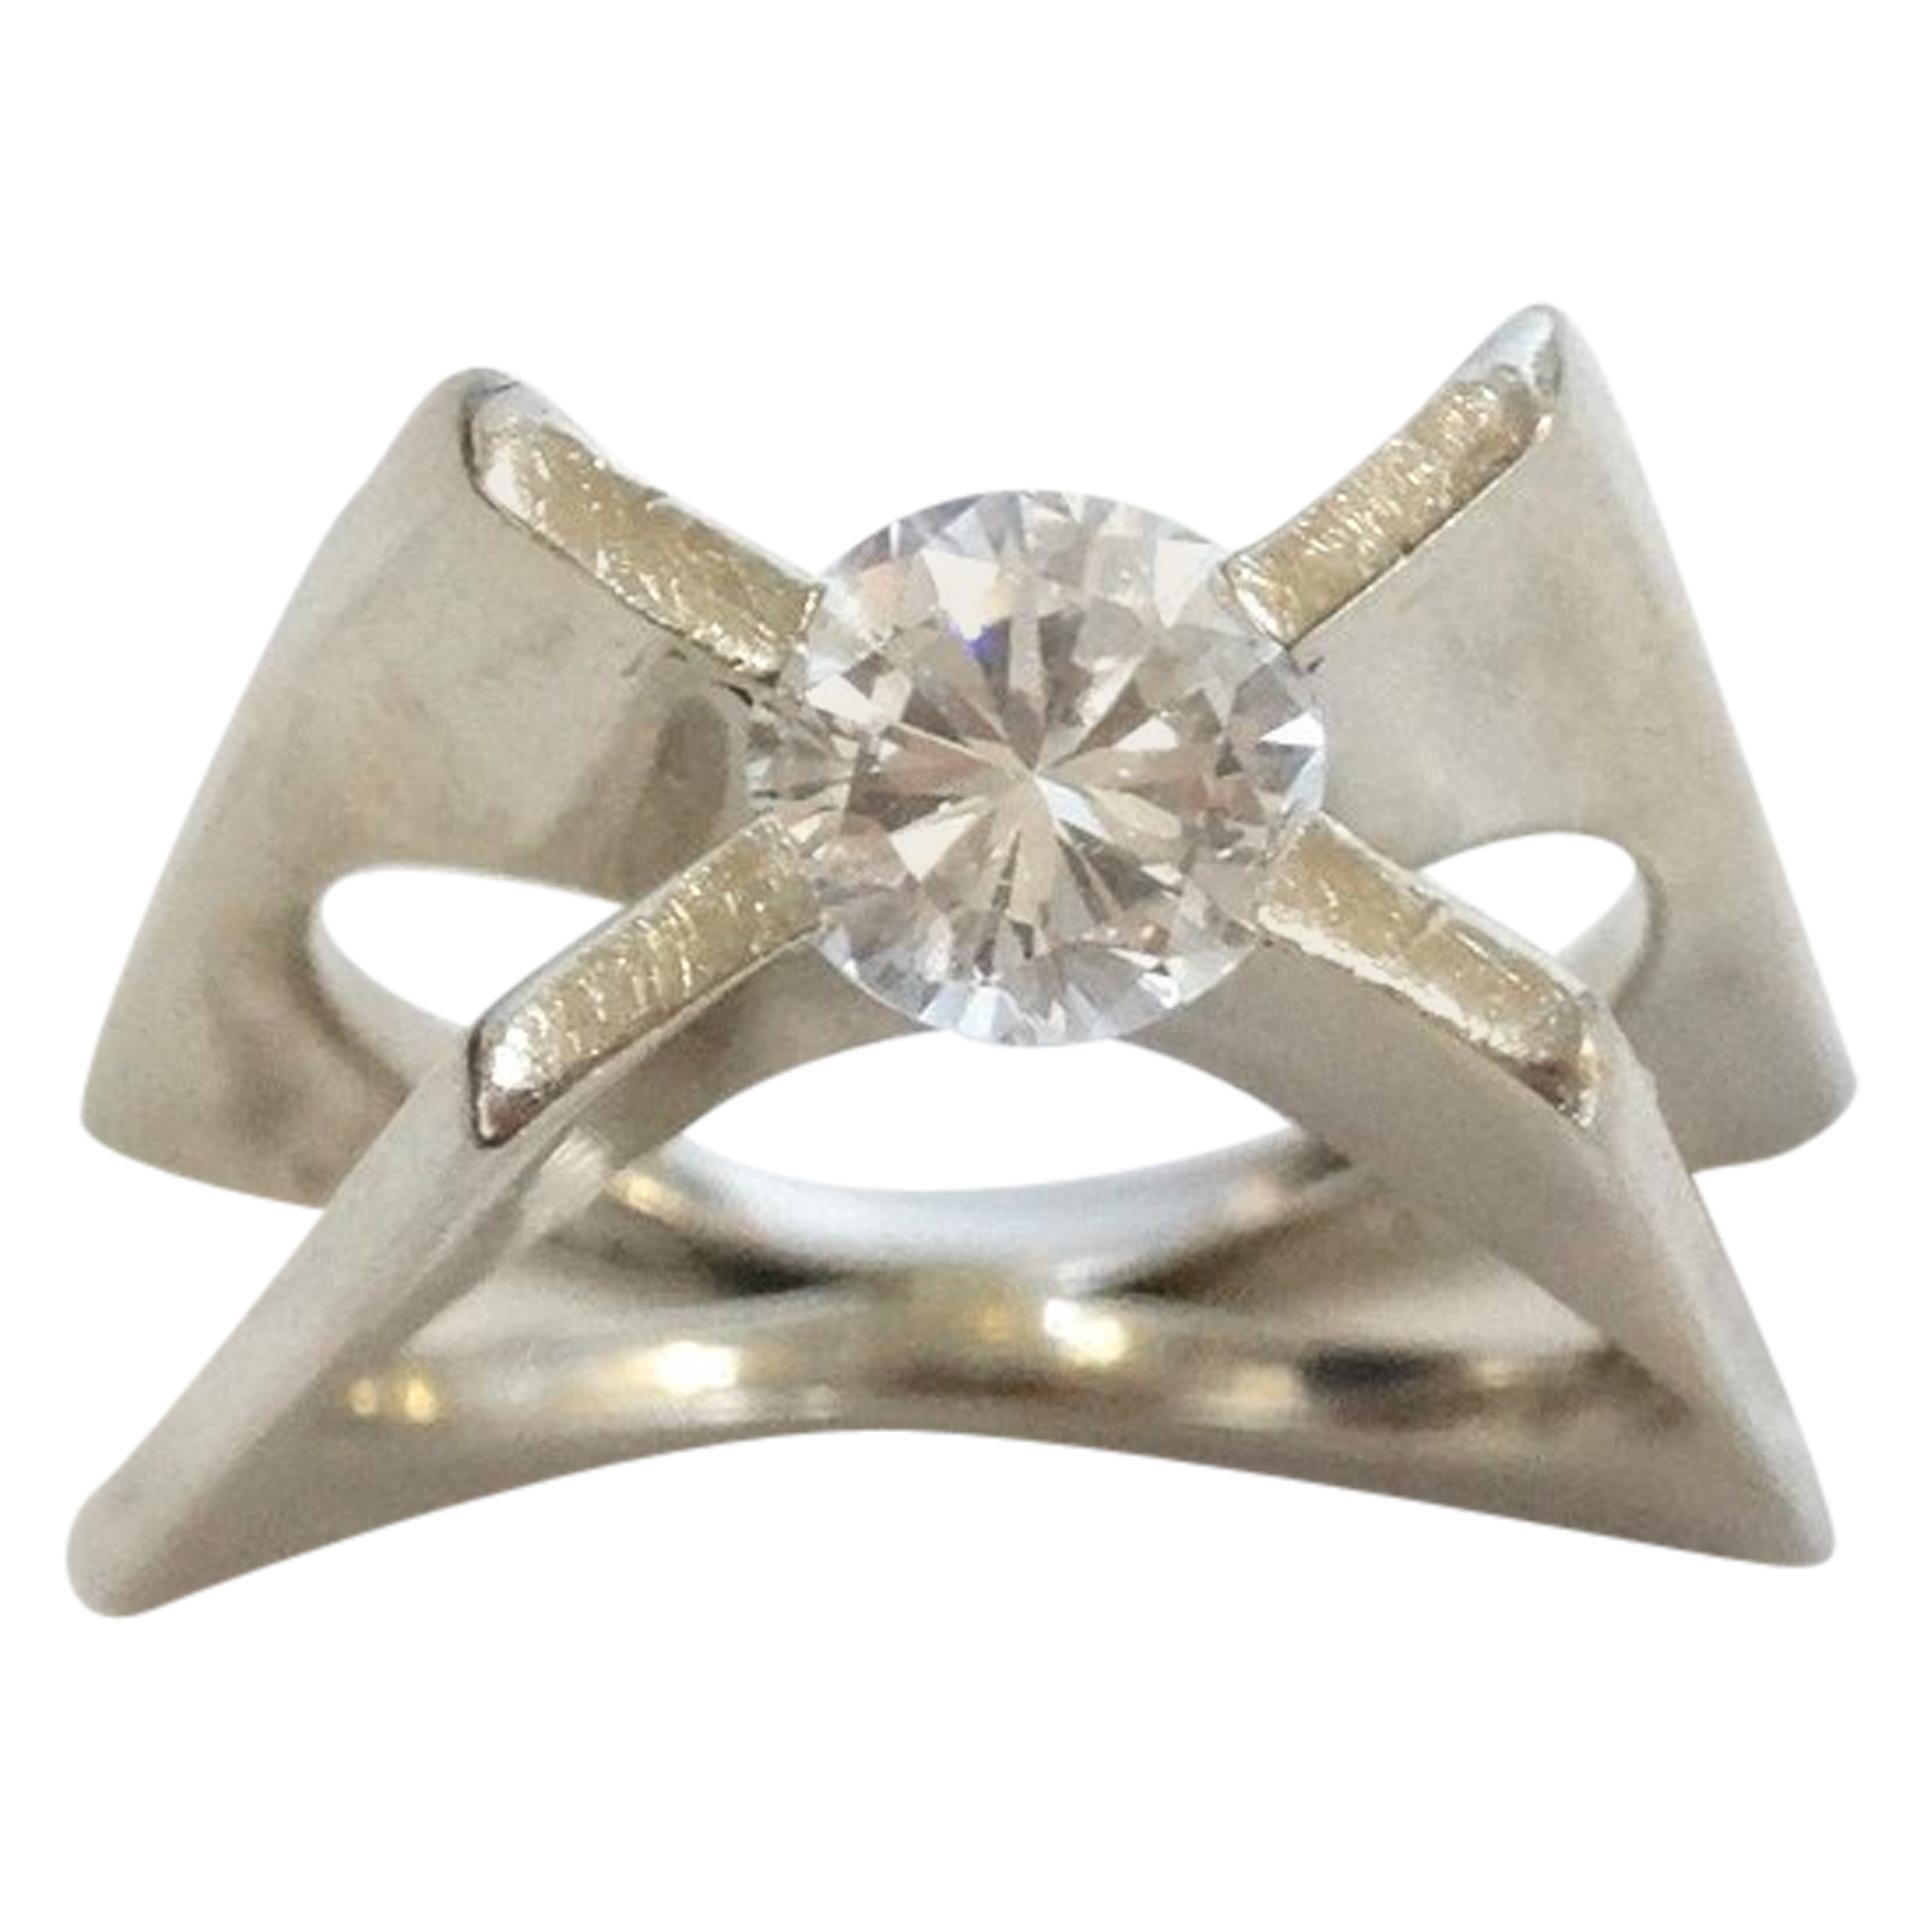 Whitt for Georg Jensen 1 Carat Diamond Ring